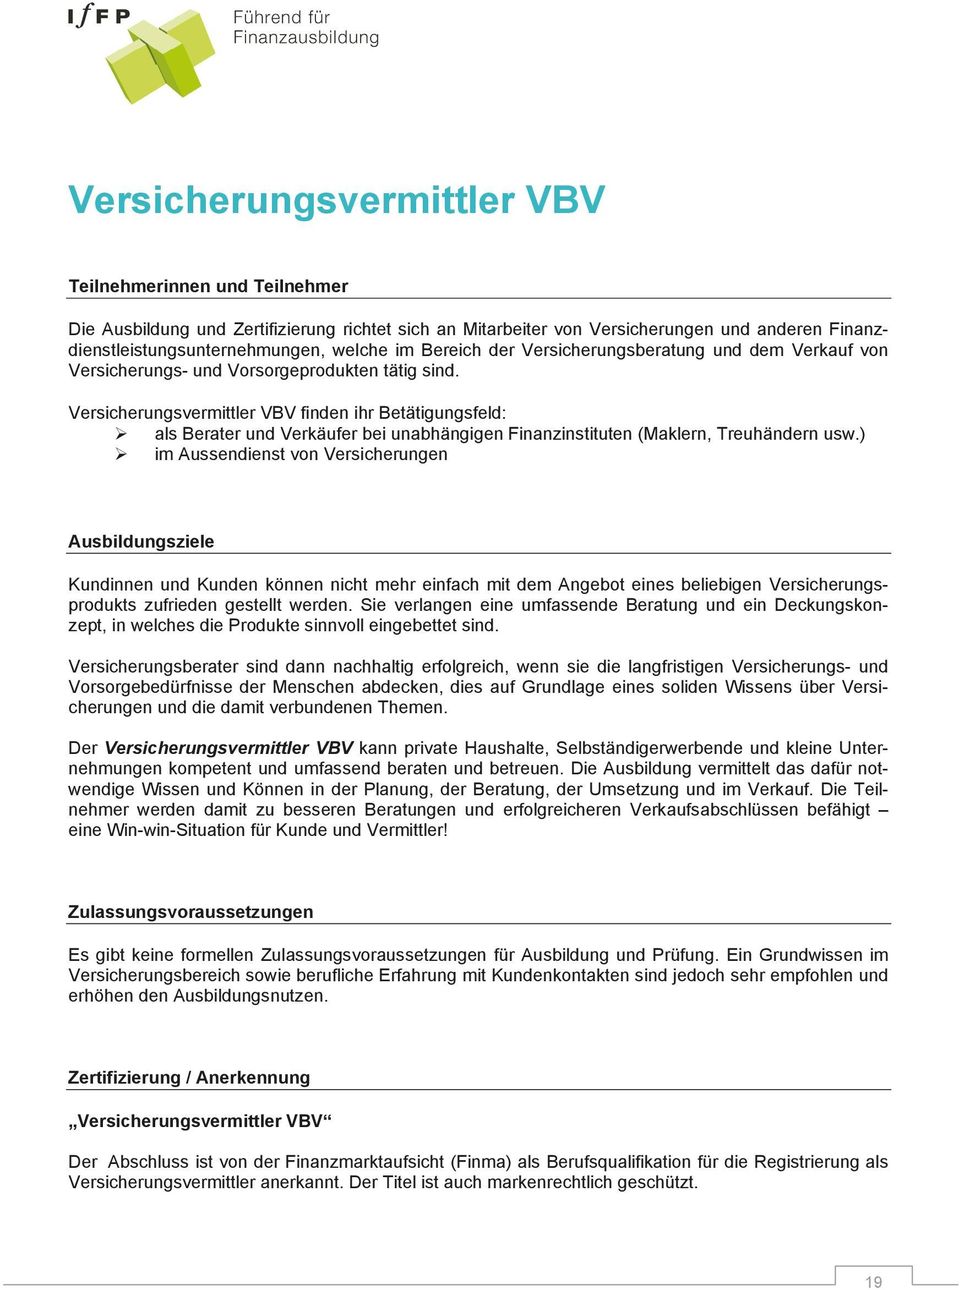 Versicherungsvermittler VBV finden ihr Betätigungsfeld: als Berater und Verkäufer bei unabhängigen Finanzinstituten (Maklern, Treuhändern usw.